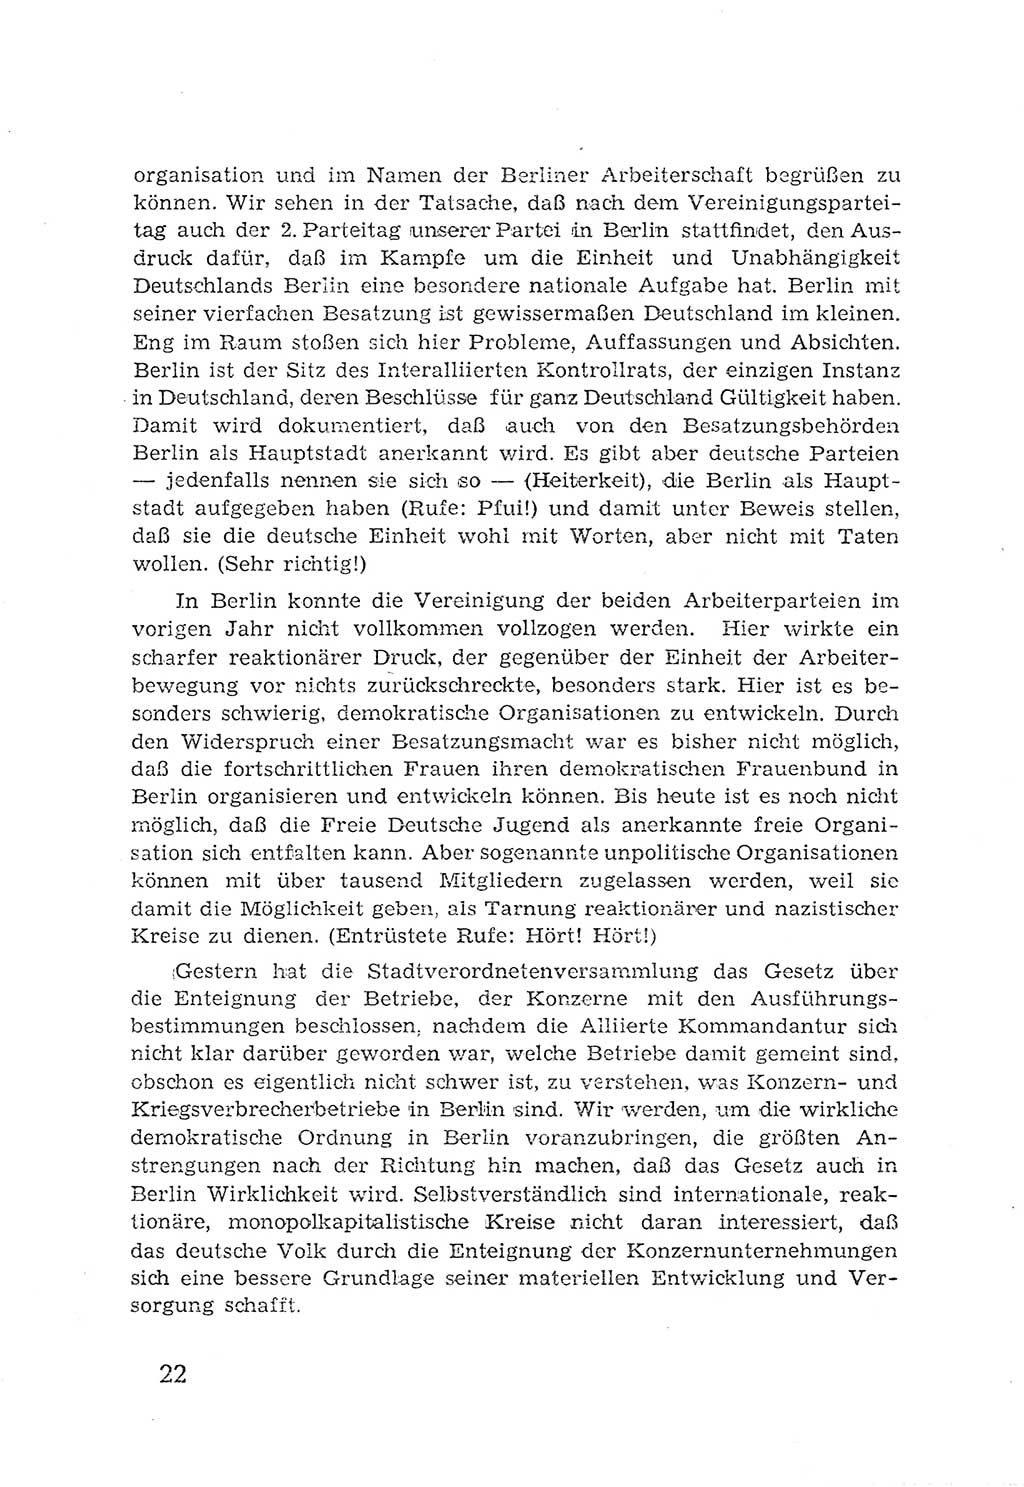 Protokoll der Verhandlungen des 2. Parteitages der Sozialistischen Einheitspartei Deutschlands (SED) [Sowjetische Besatzungszone (SBZ) Deutschlands] 1947, Seite 22 (Prot. Verh. 2. PT SED SBZ Dtl. 1947, S. 22)